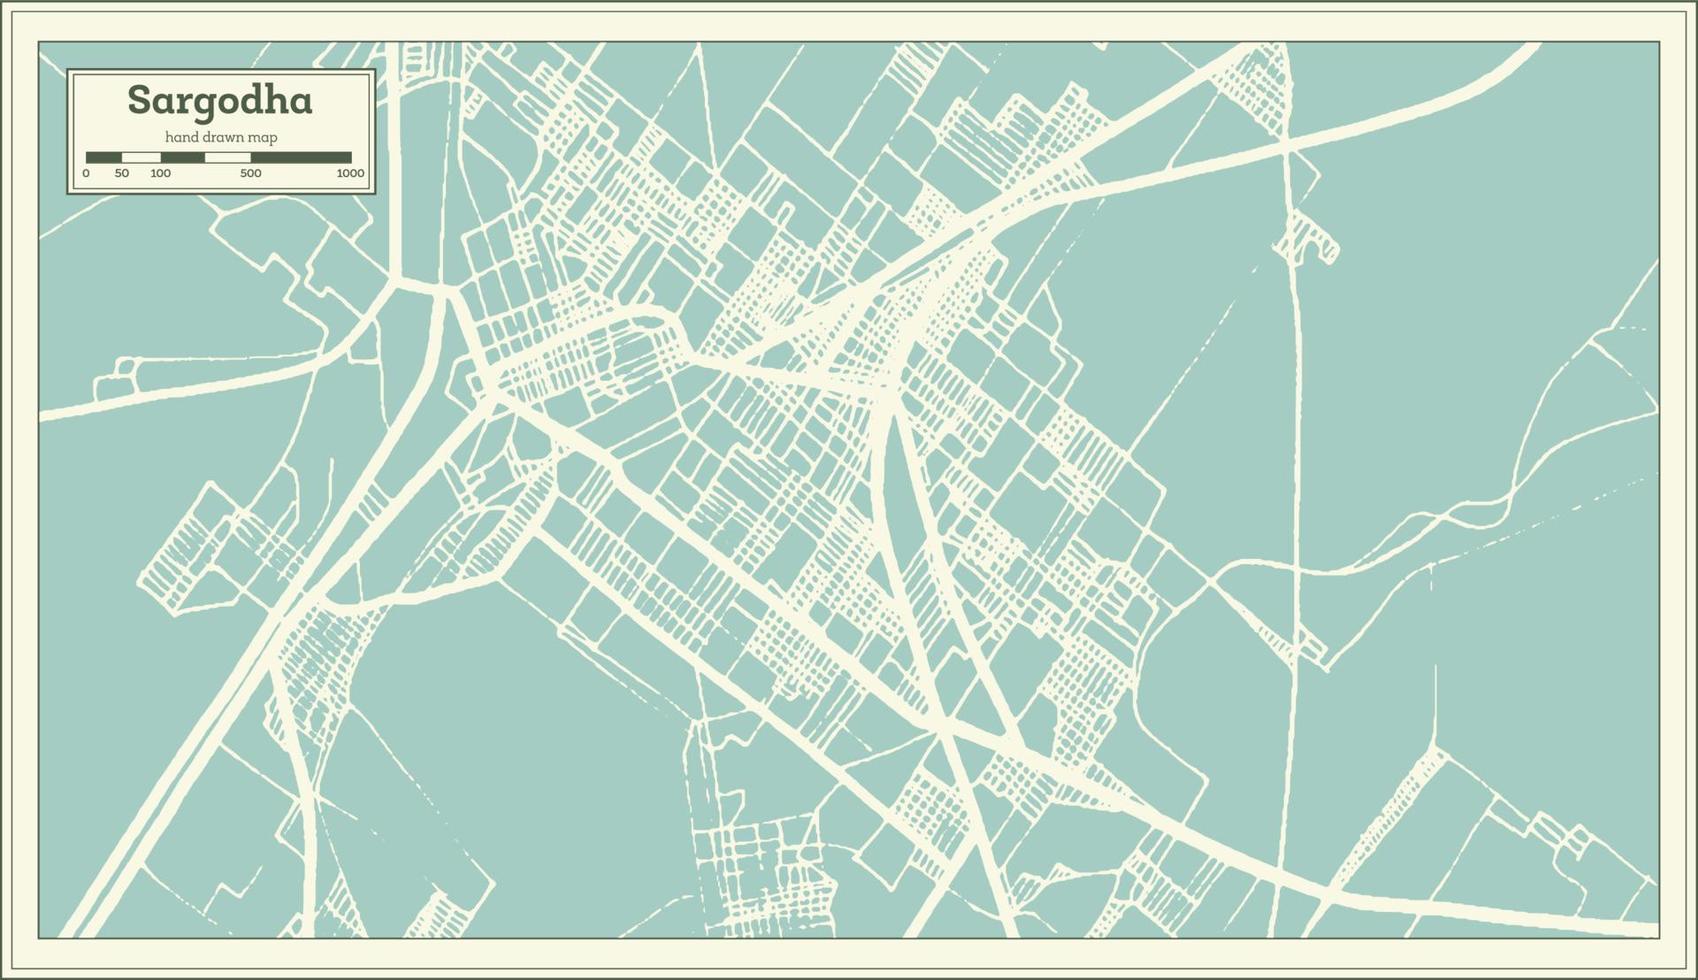 plan de la ville de sargodha pakistan dans un style rétro. carte muette. vecteur